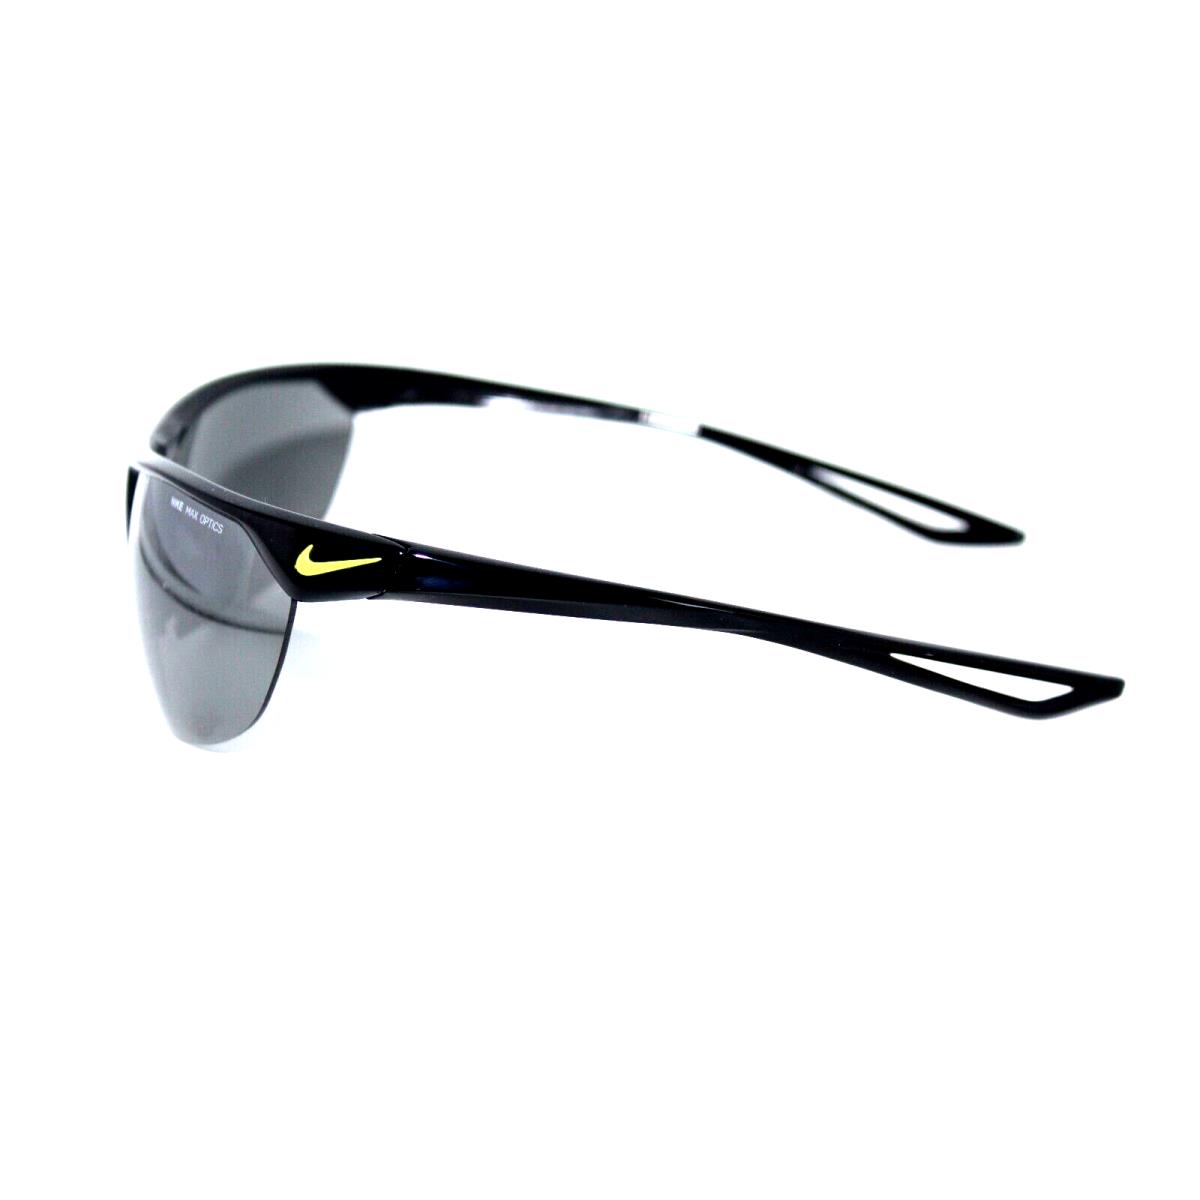 Nike sunglasses CROSS TRAINER - Black Frame, Gray Lens 2